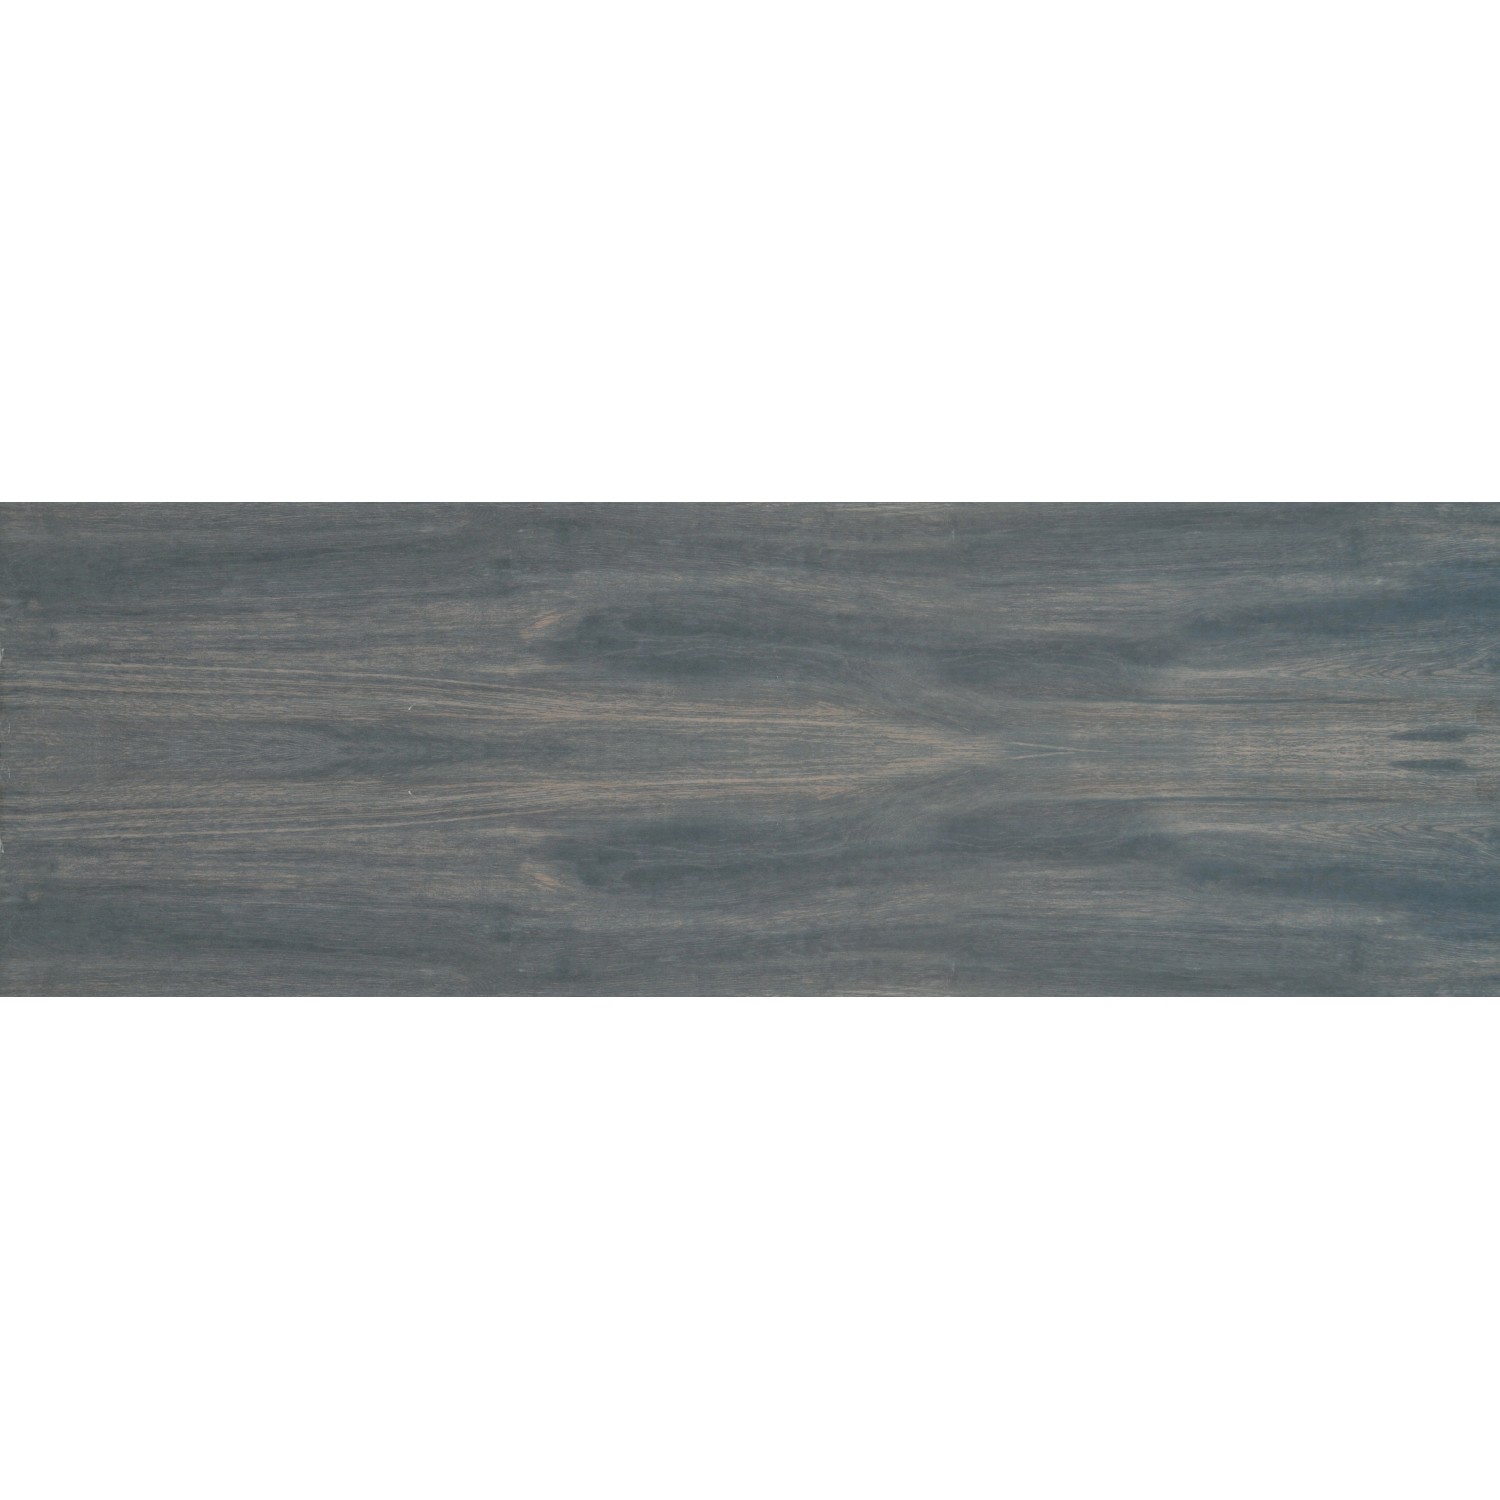 Terrassenplatte Feinsteinzeug Skagen Ebony glasiert matt 40 x 120 x 2 cm